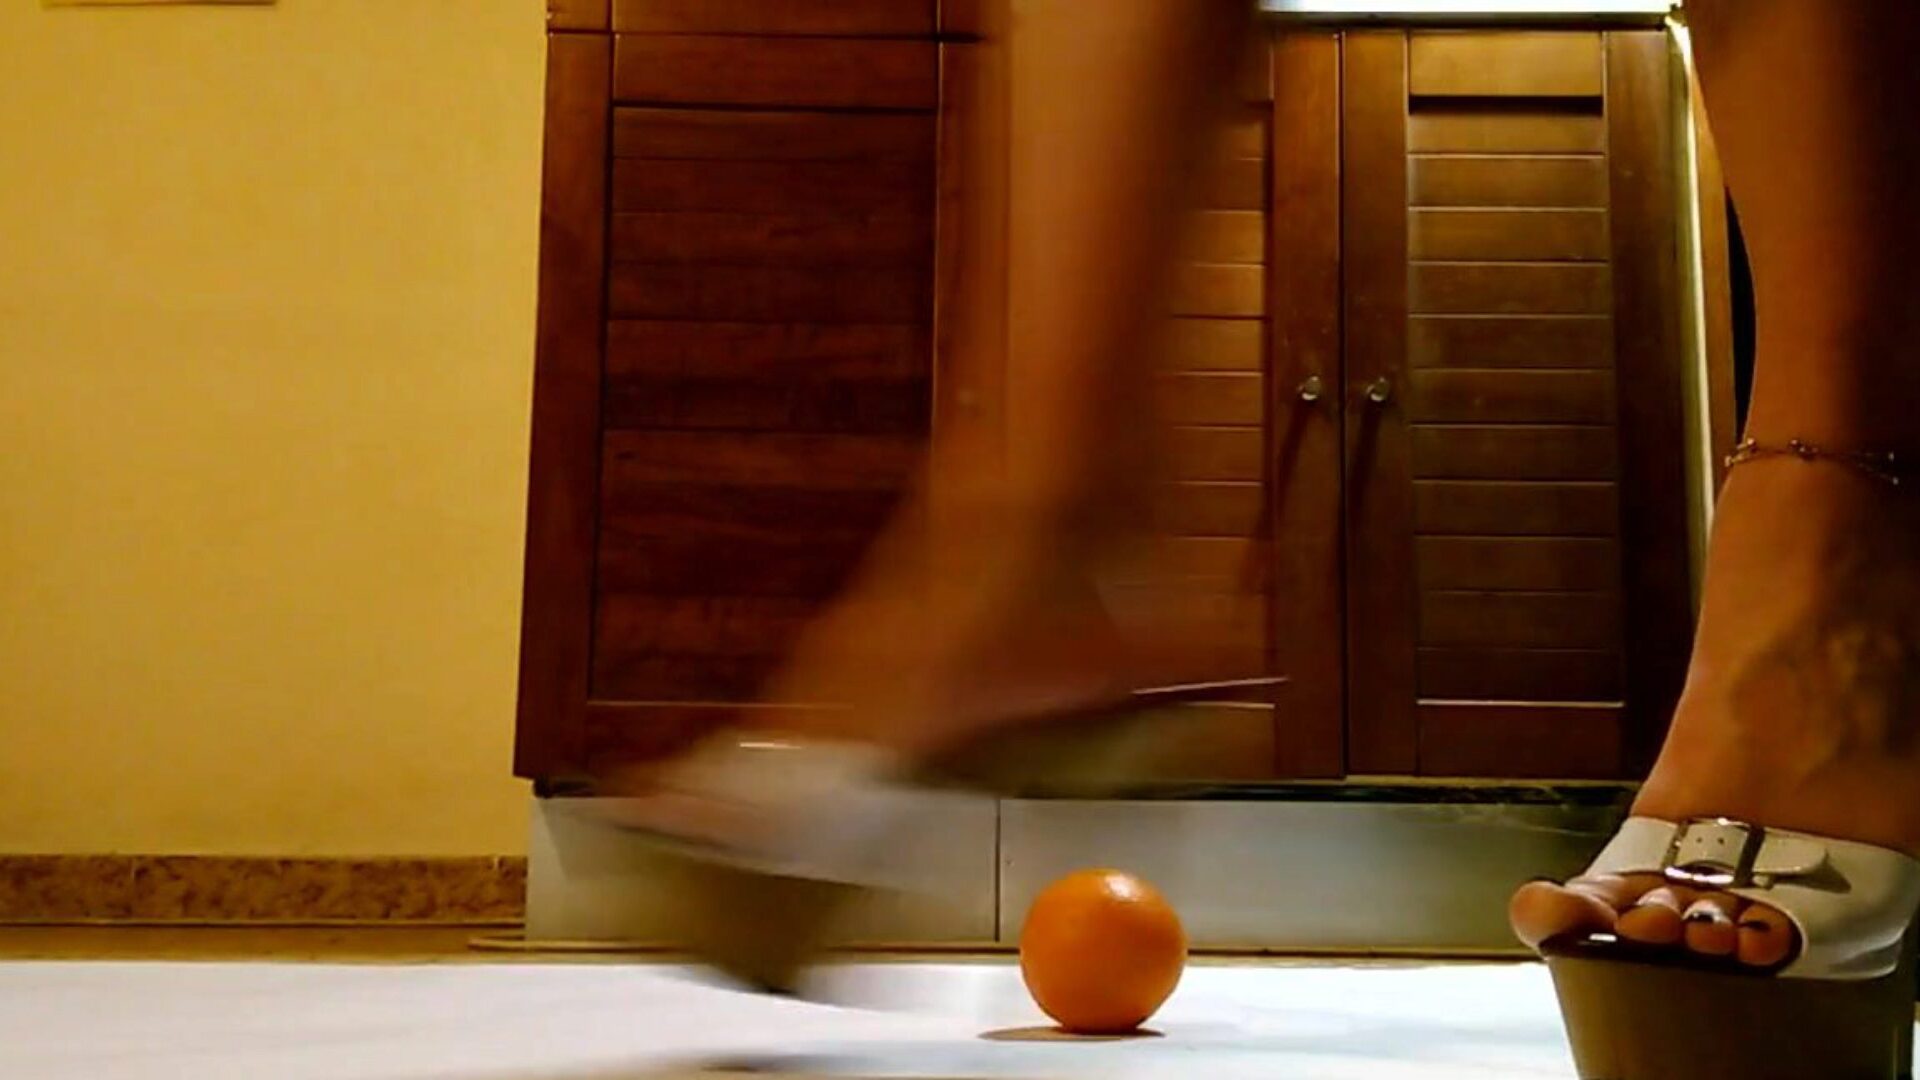 Kellnerin spielen und schlagen Orange in hawt Plattform hochhackigen Schuhen Kellnerin haben Spaß und treten Orange in sexy Plattform hochhackigen Schuhen